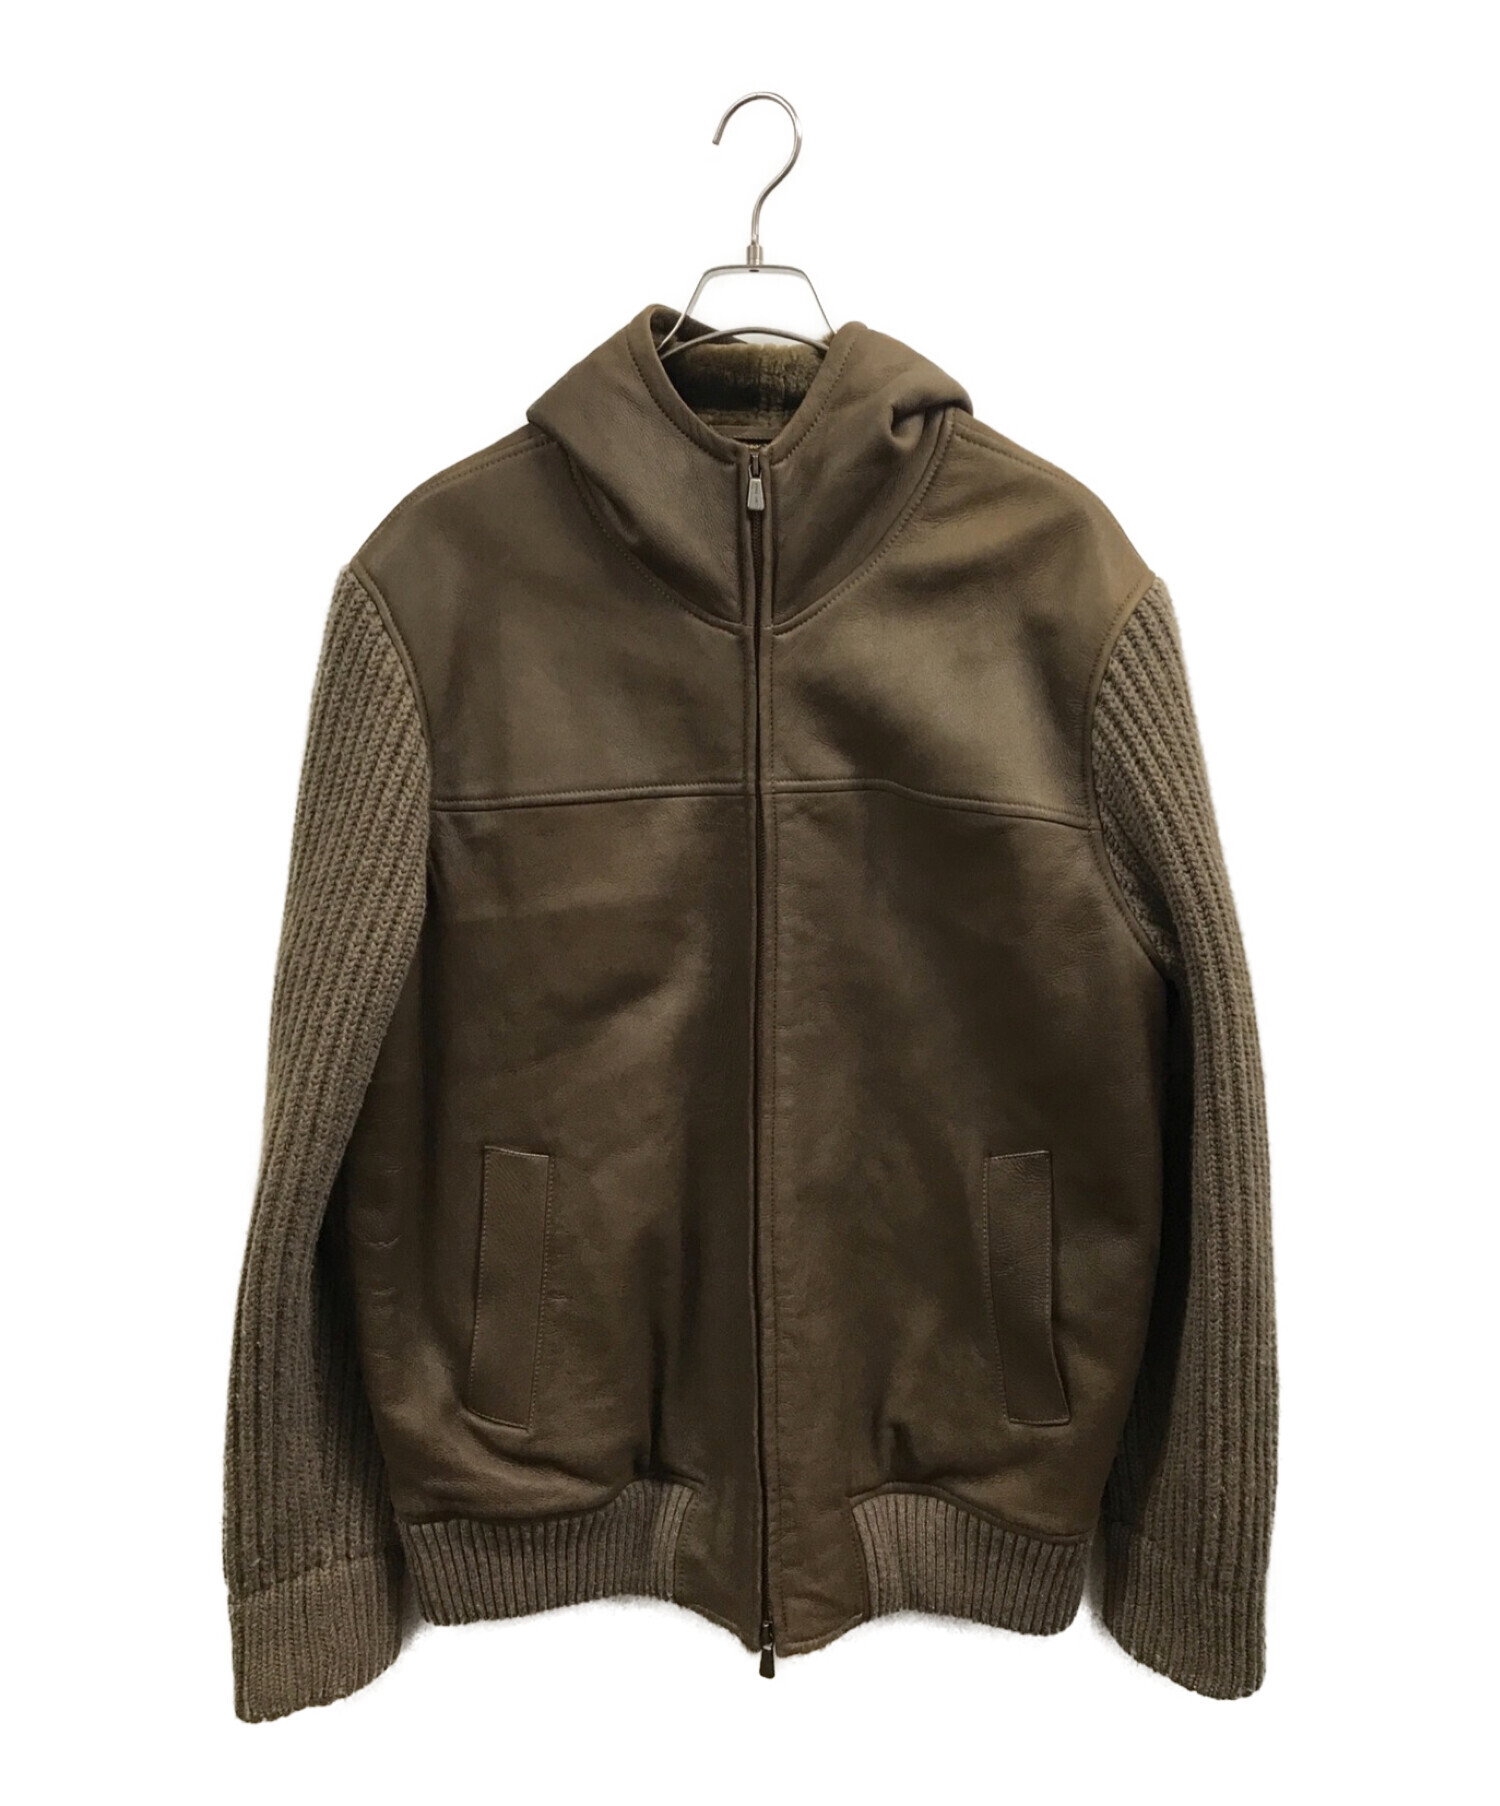 最安値級価格 ロロピアーナ最高級品羊革ジャケットサイズ50 ジャケット 